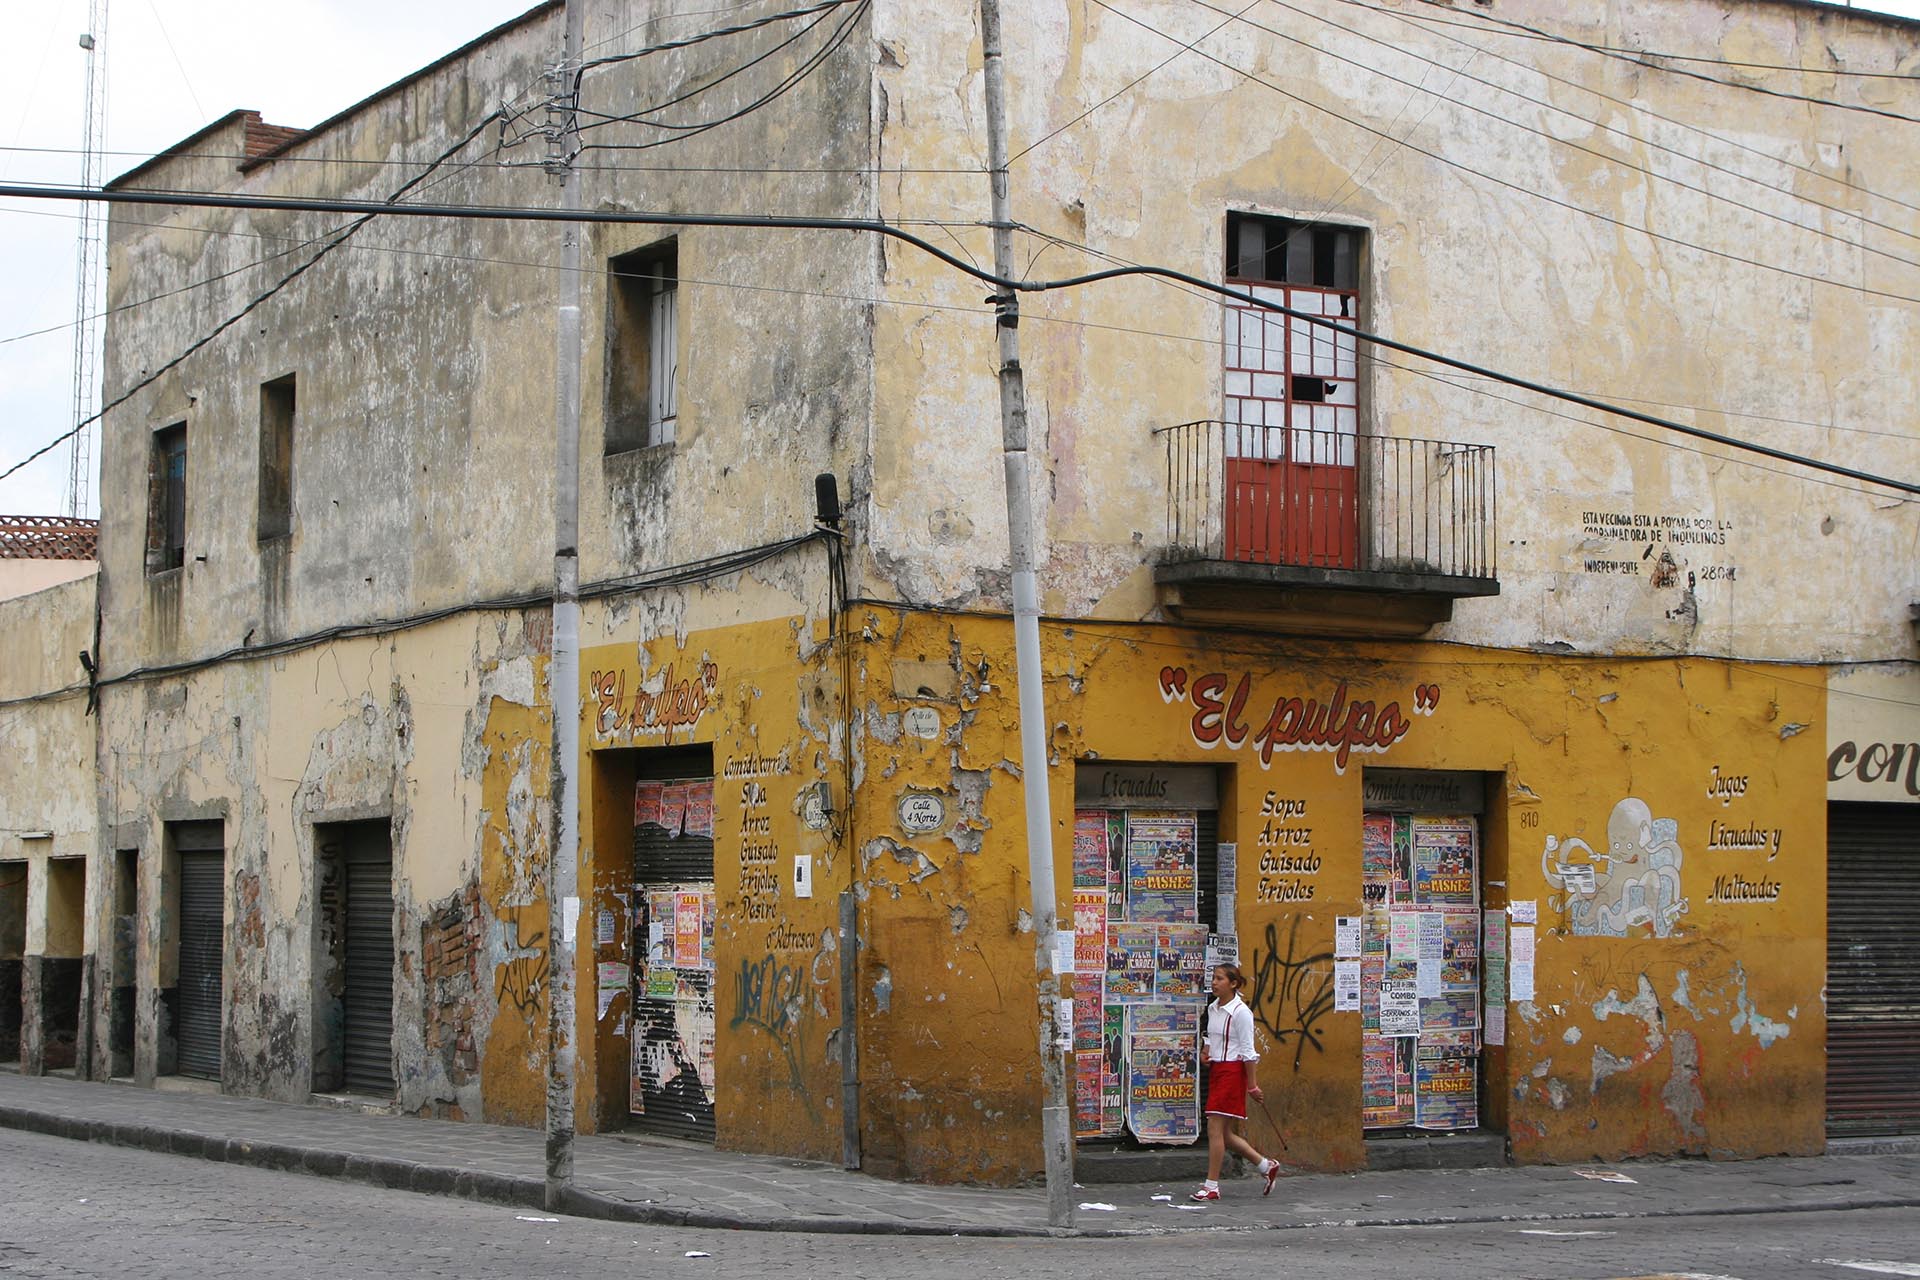 Impression Kleinstadt in Mexico